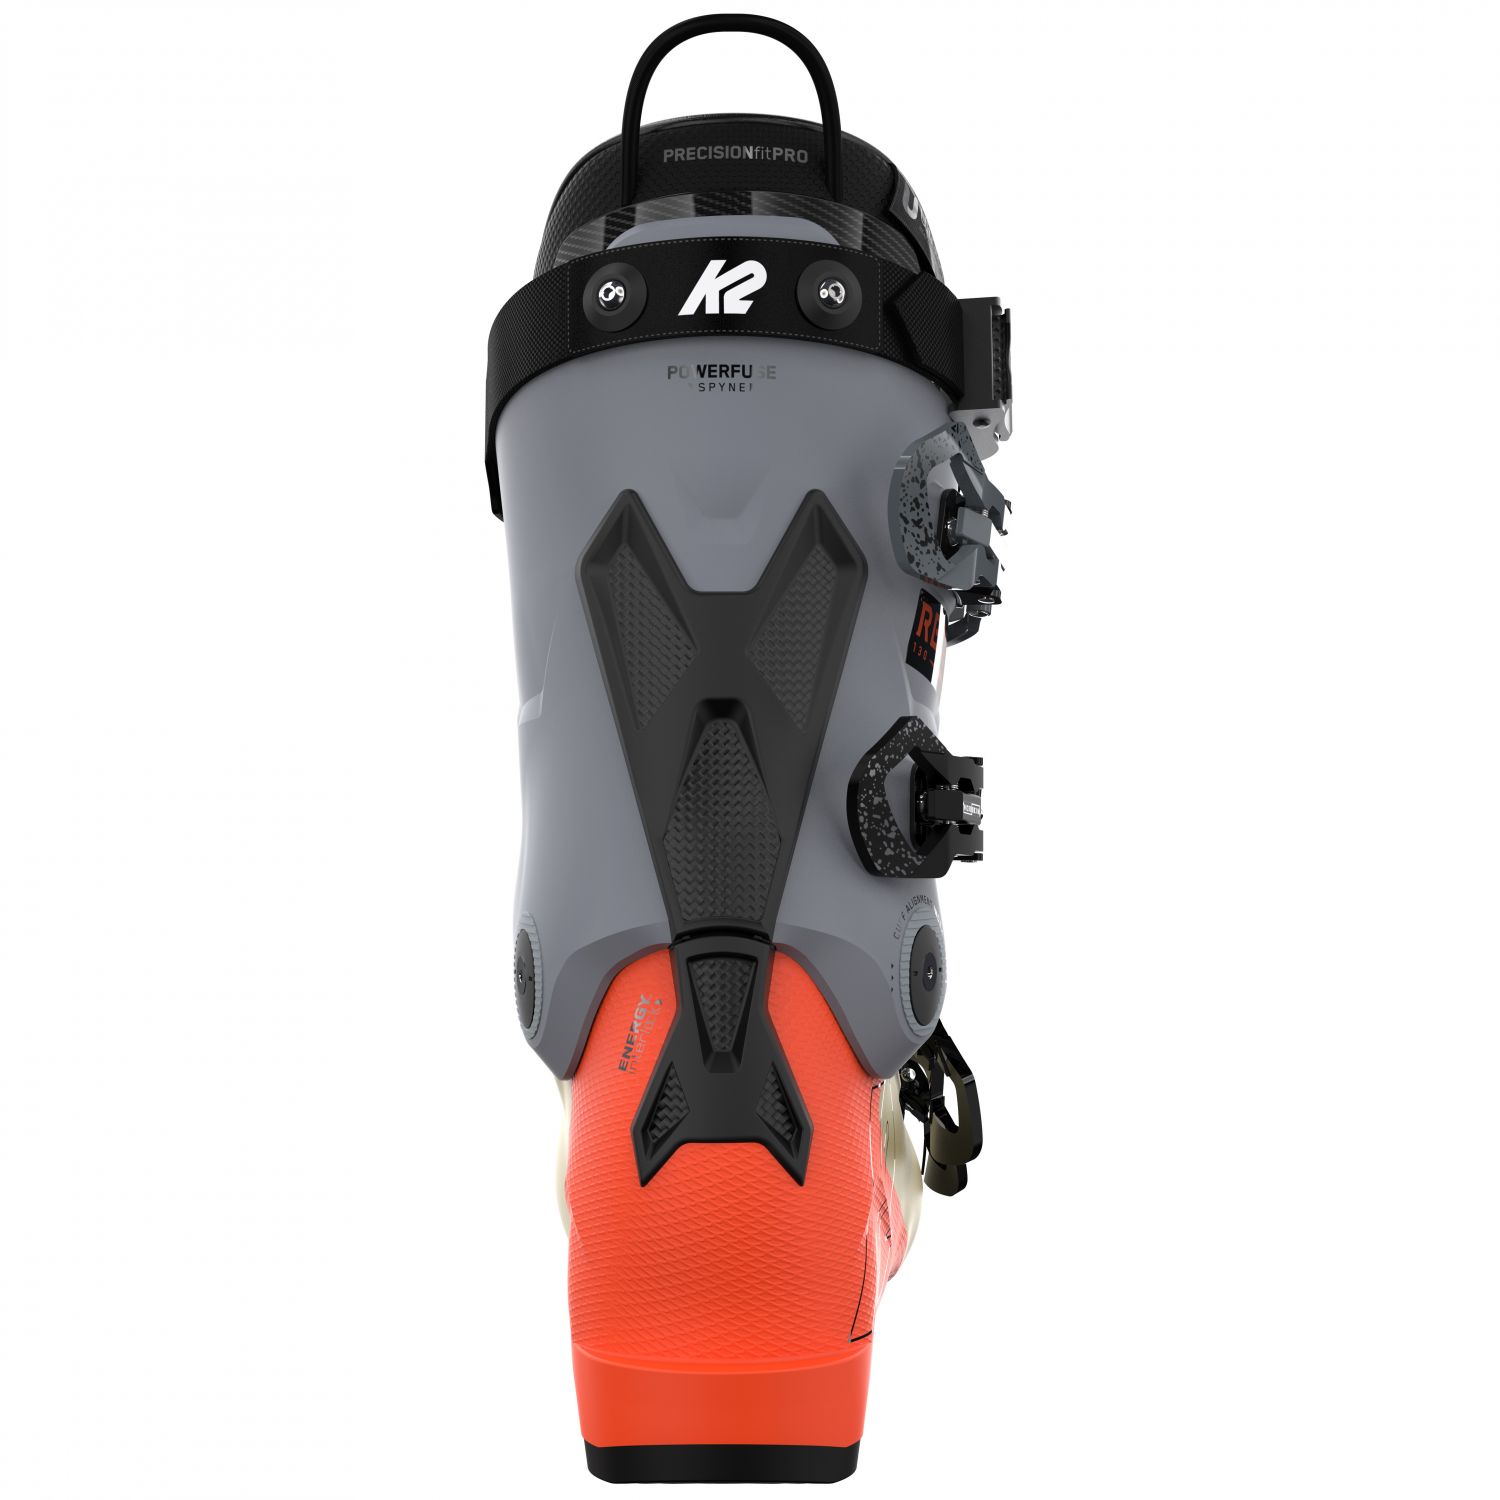 K2 Recon 130 LV, skischoenen, heren, orange